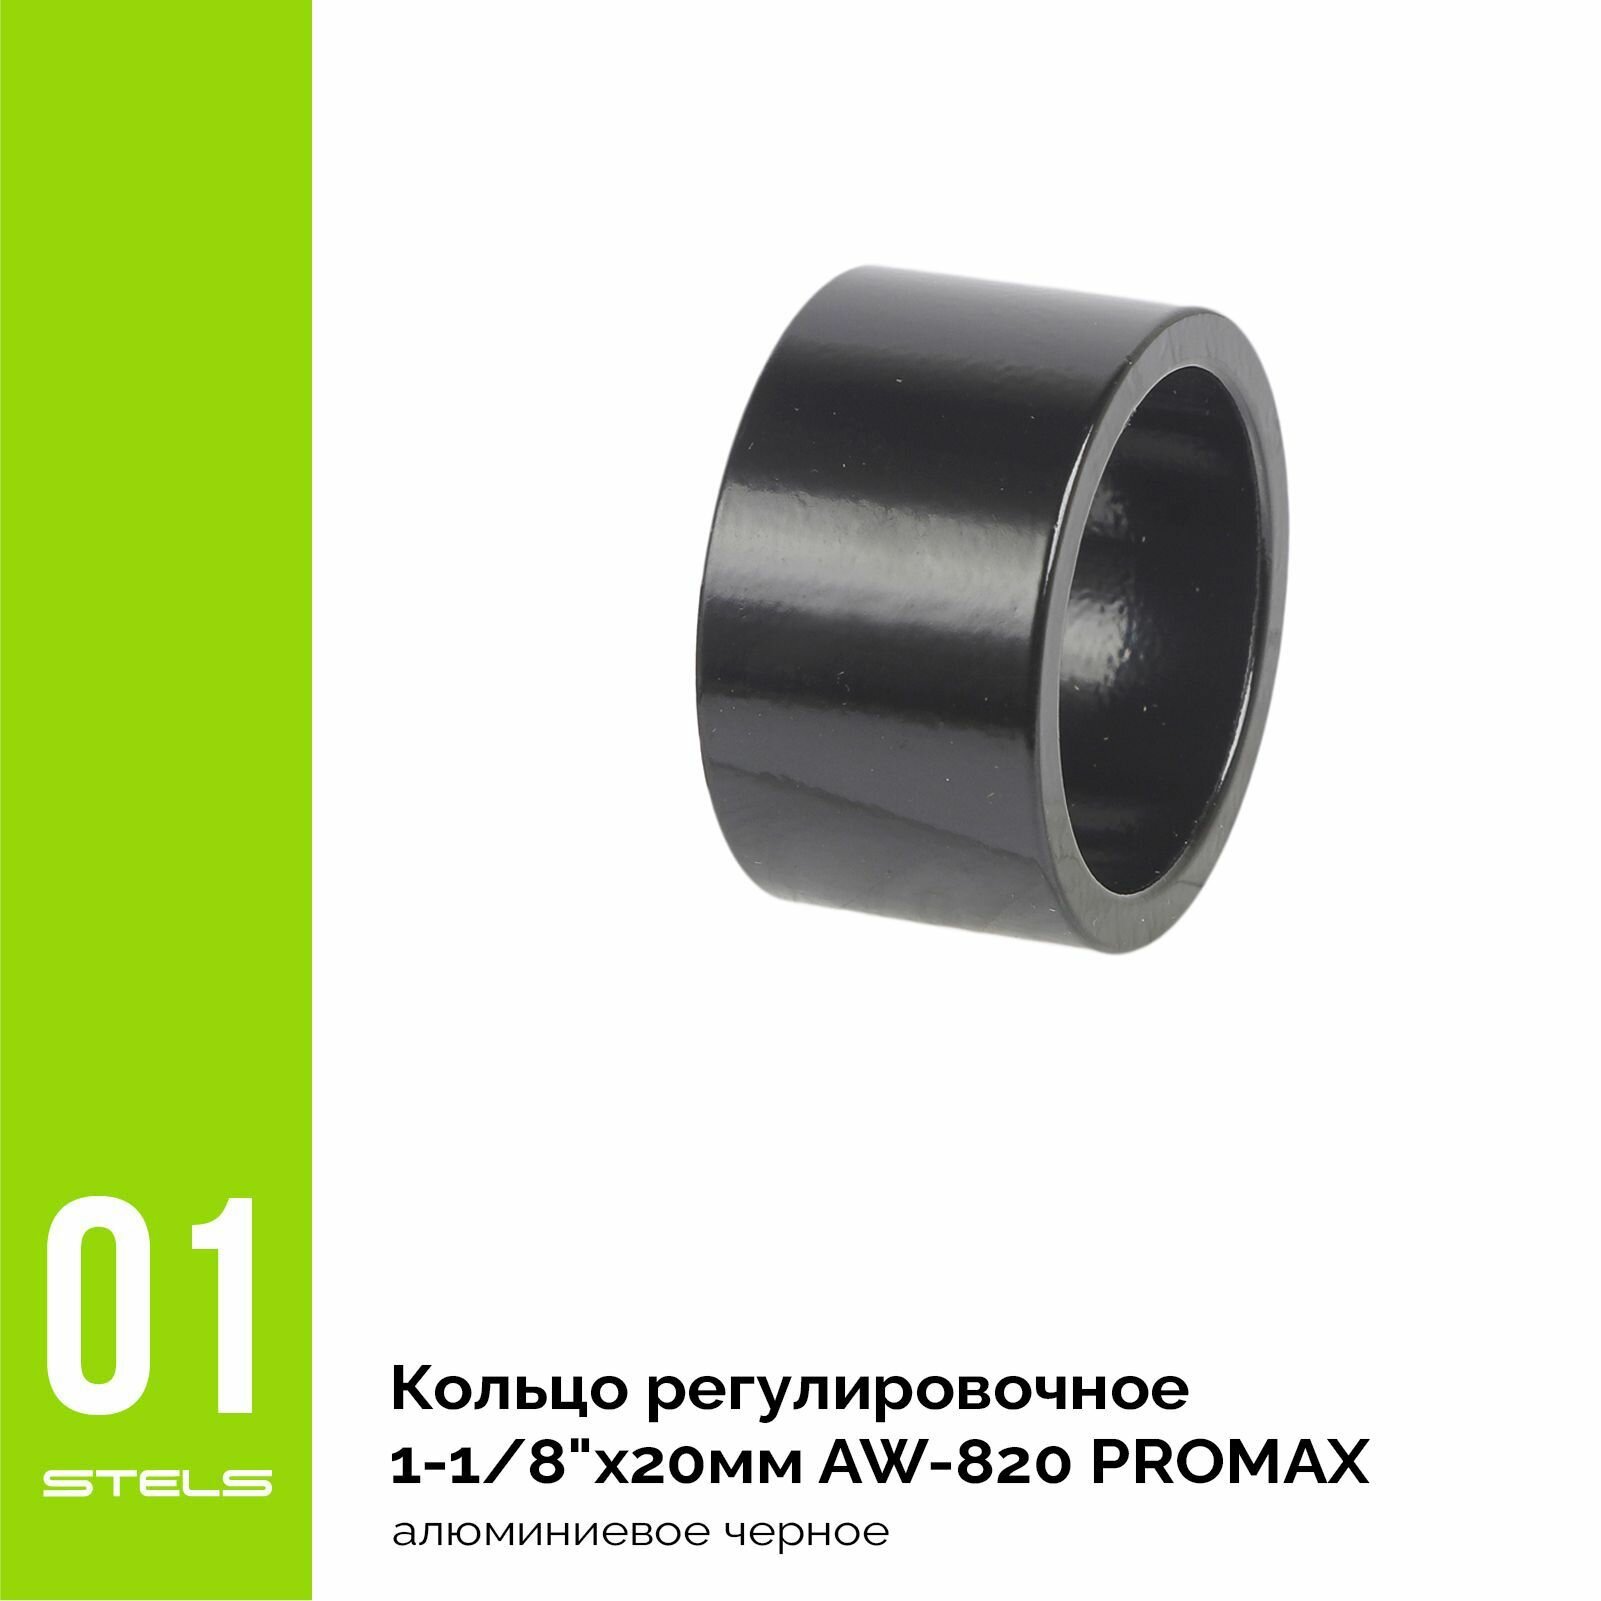 Кольцо регулировочное для велосипеда PROMAX 1-1/8"х20мм AW-820 алюминиевое черное NEW